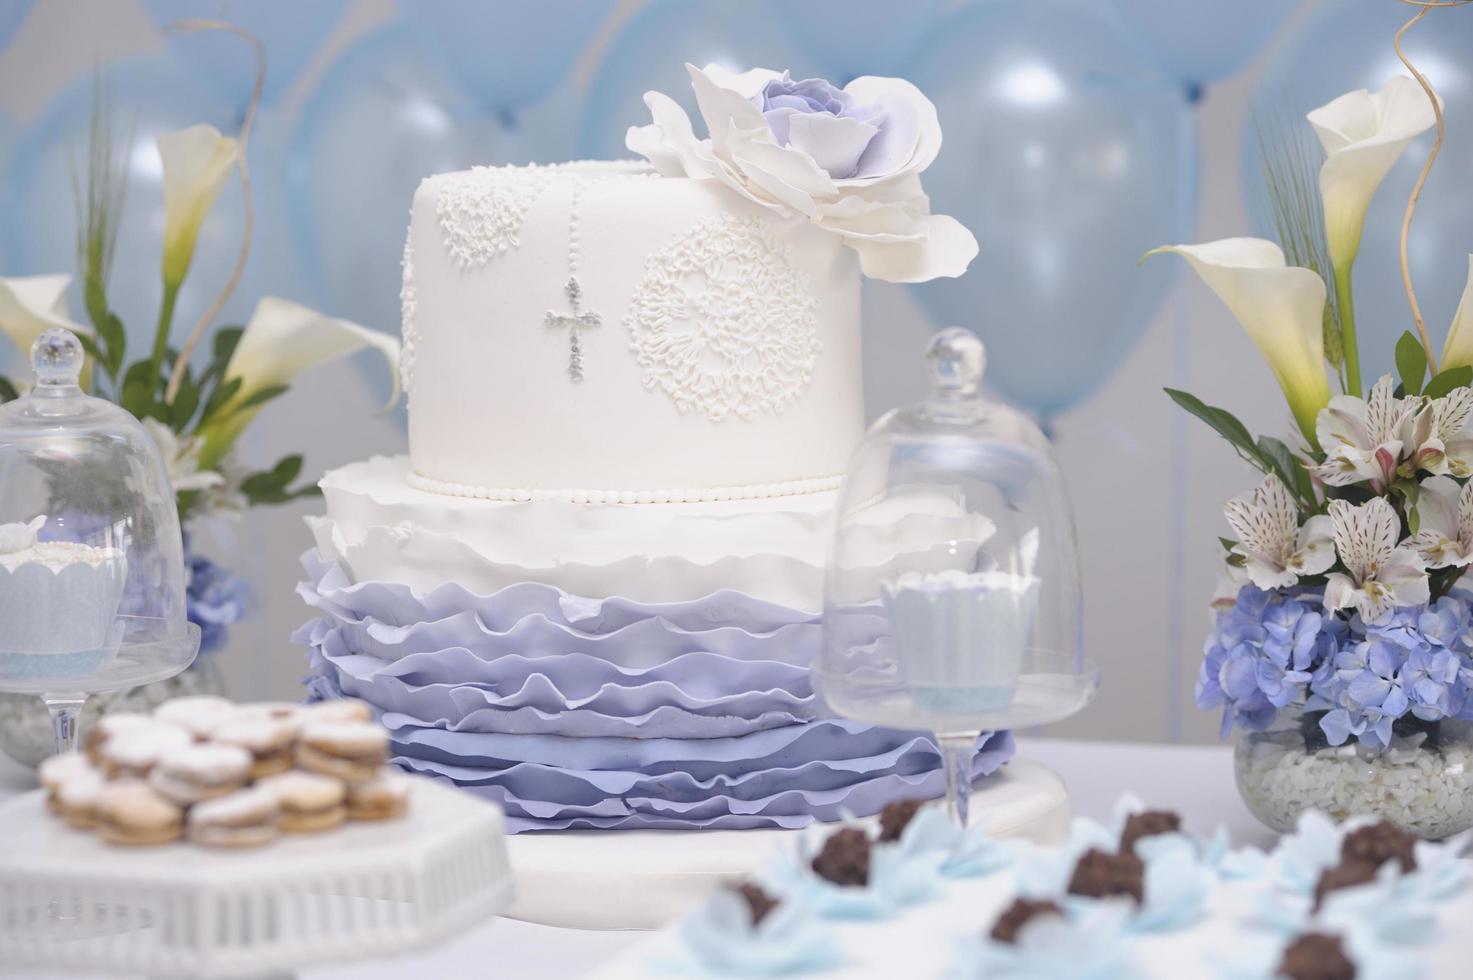 Cake for catholic christening photo